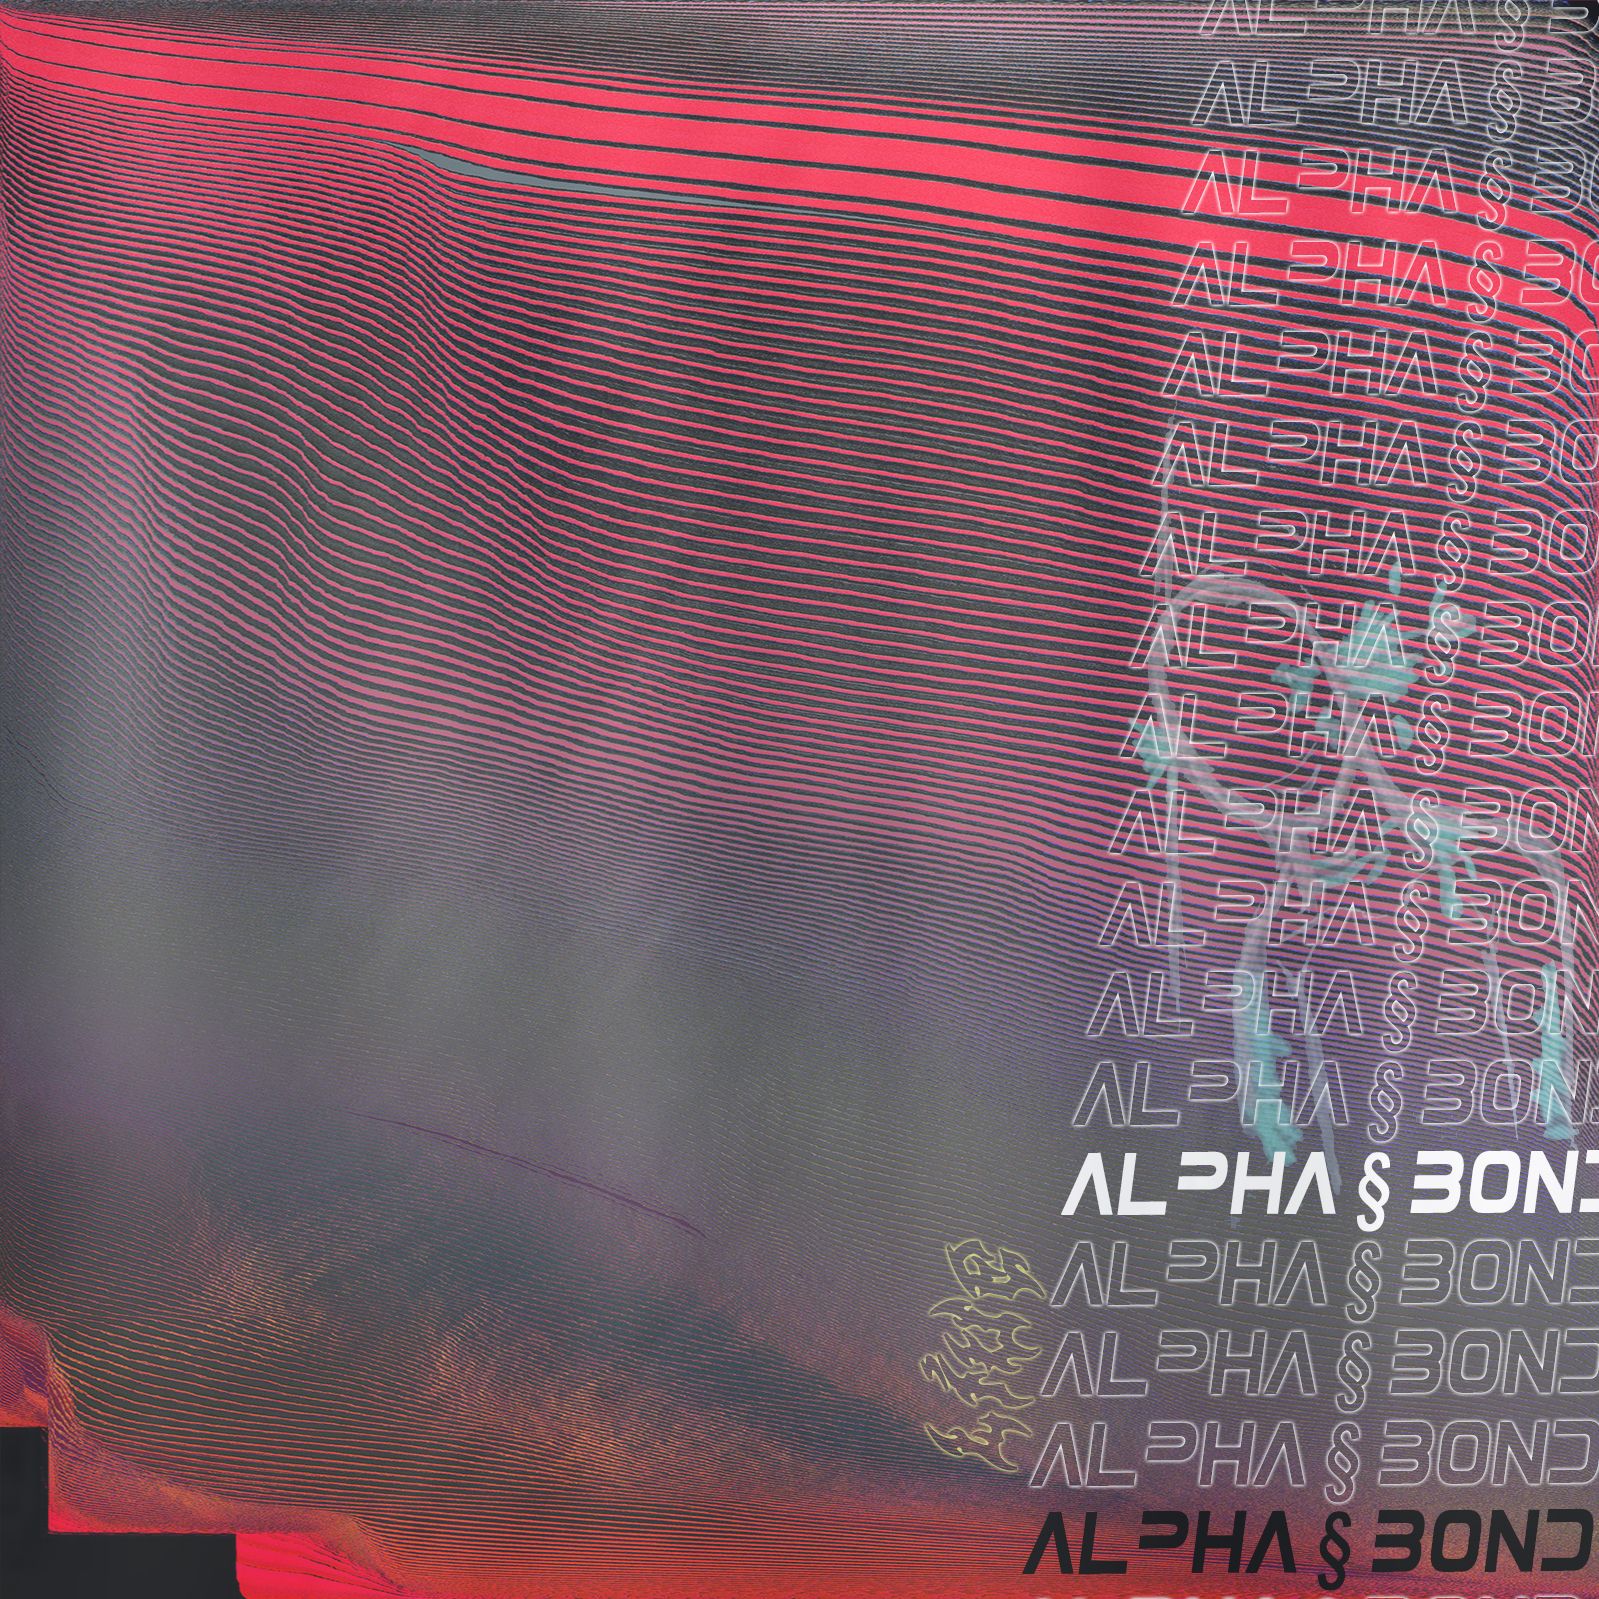 Ṣe igbasilẹ alpha § bond